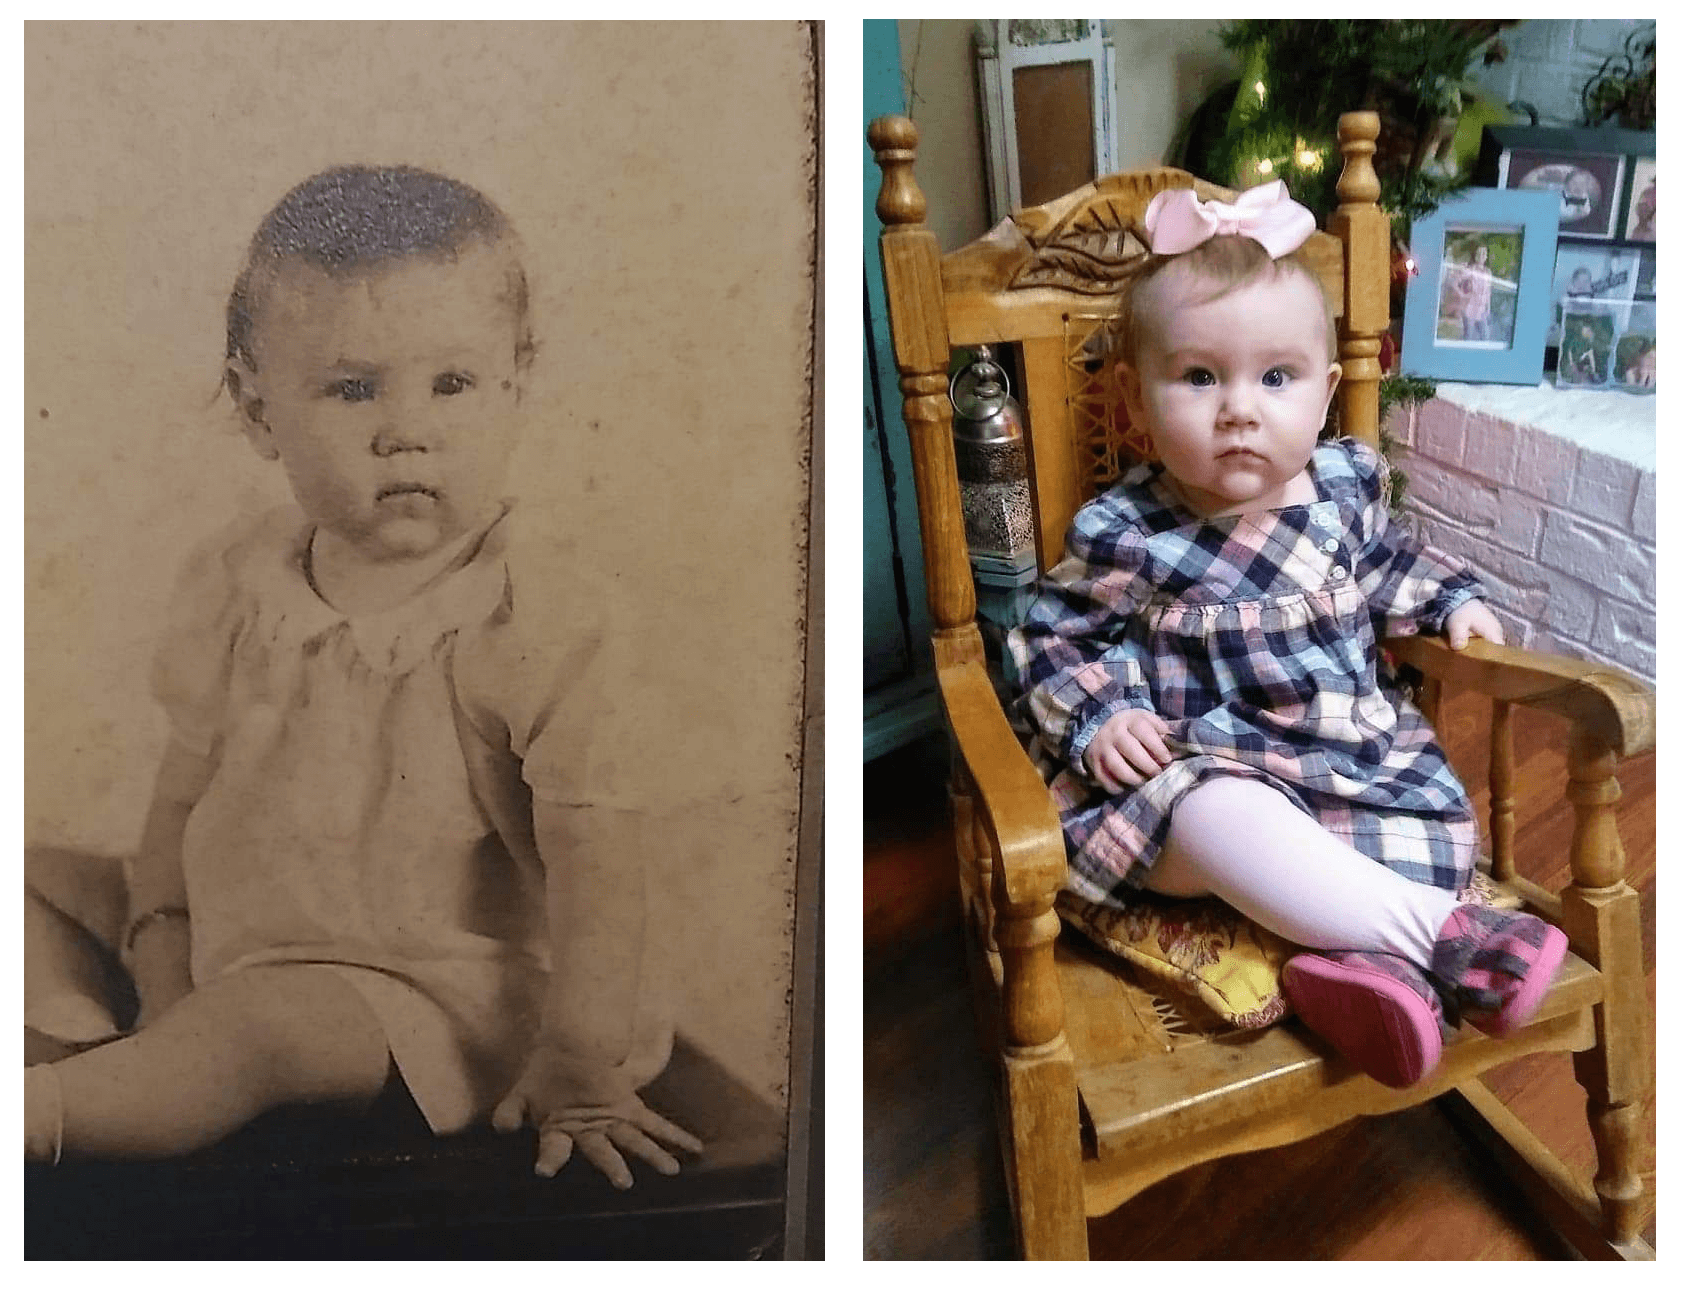 Från vänster, Megans gammelmormor May Ballard Germer född 1934 och hennes efterkommande, Rhiannon Baker född 2018.